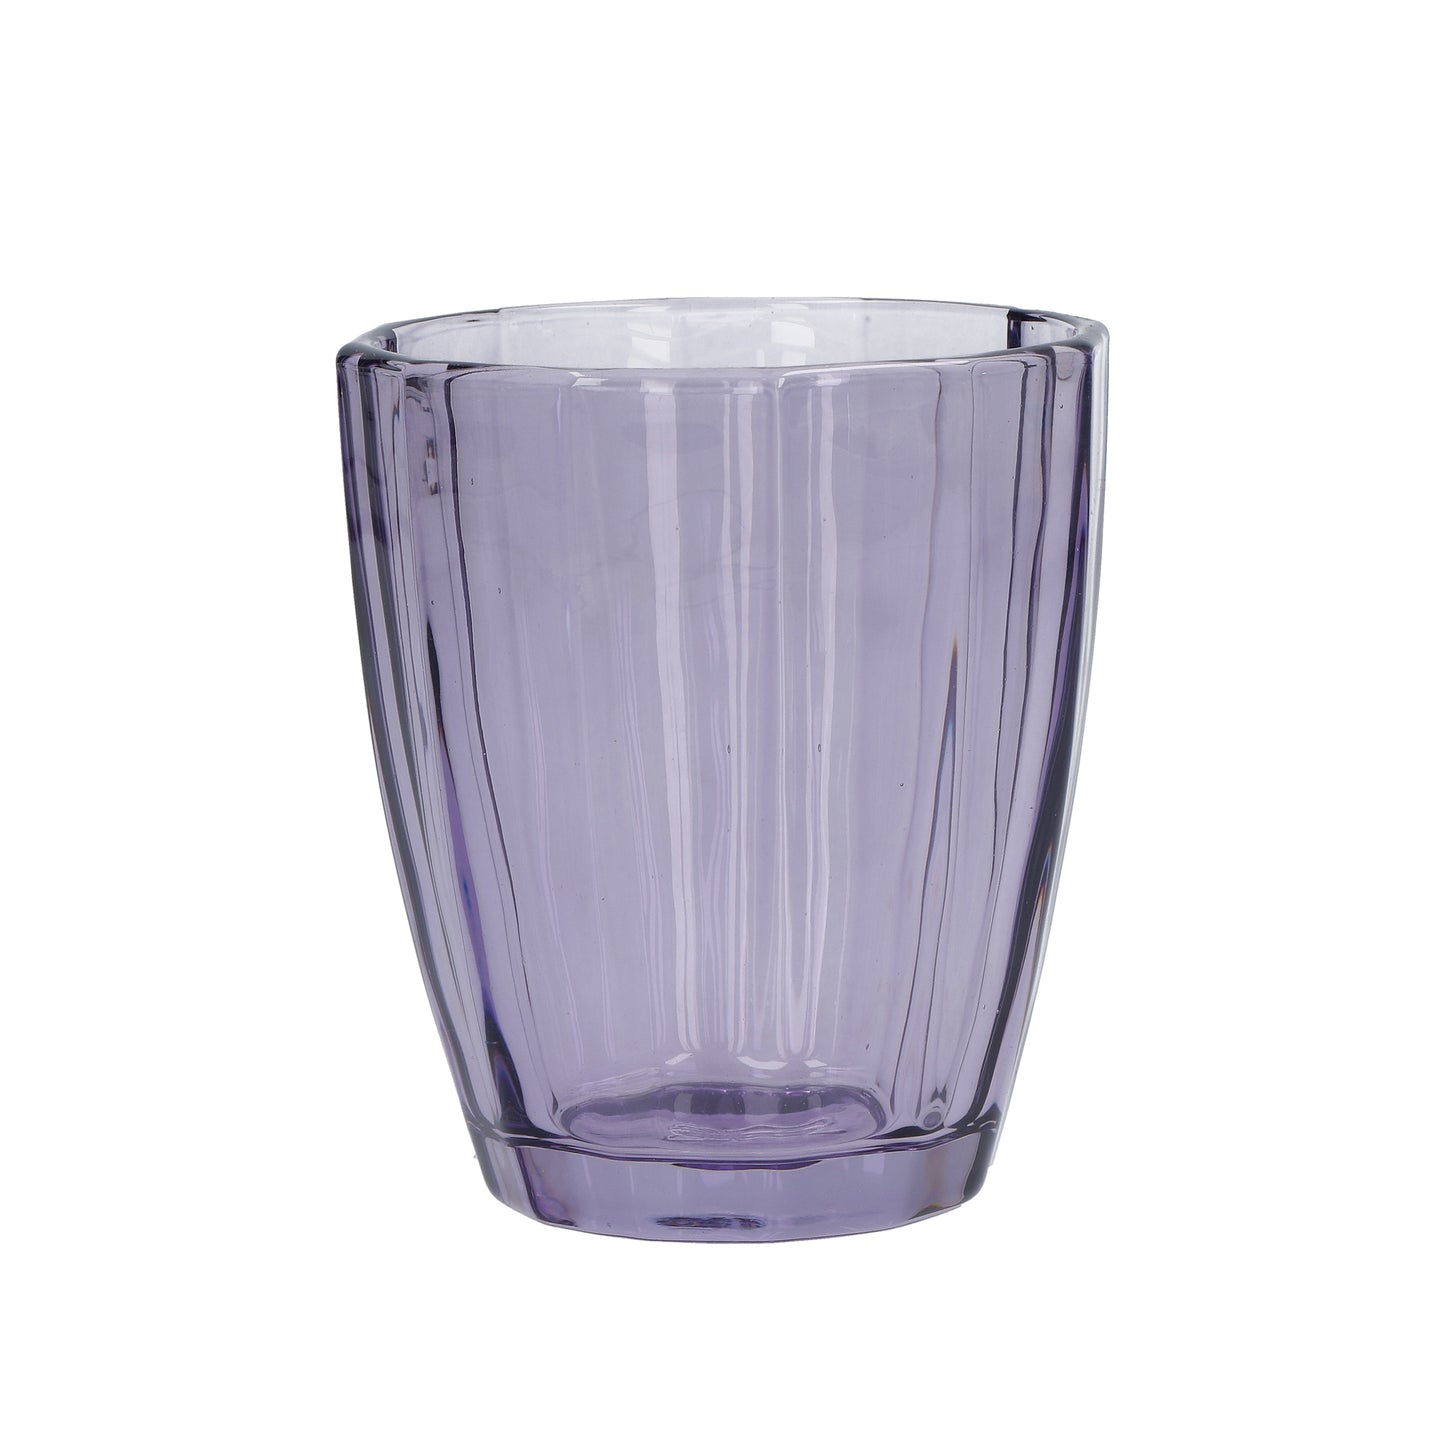 Confezione 6 bicchieri in vetro ametista cc 320 - Ø 8,5 - h 10 cm. Lavabili in lavastoviglie. In negozio e online su tuttochic.it